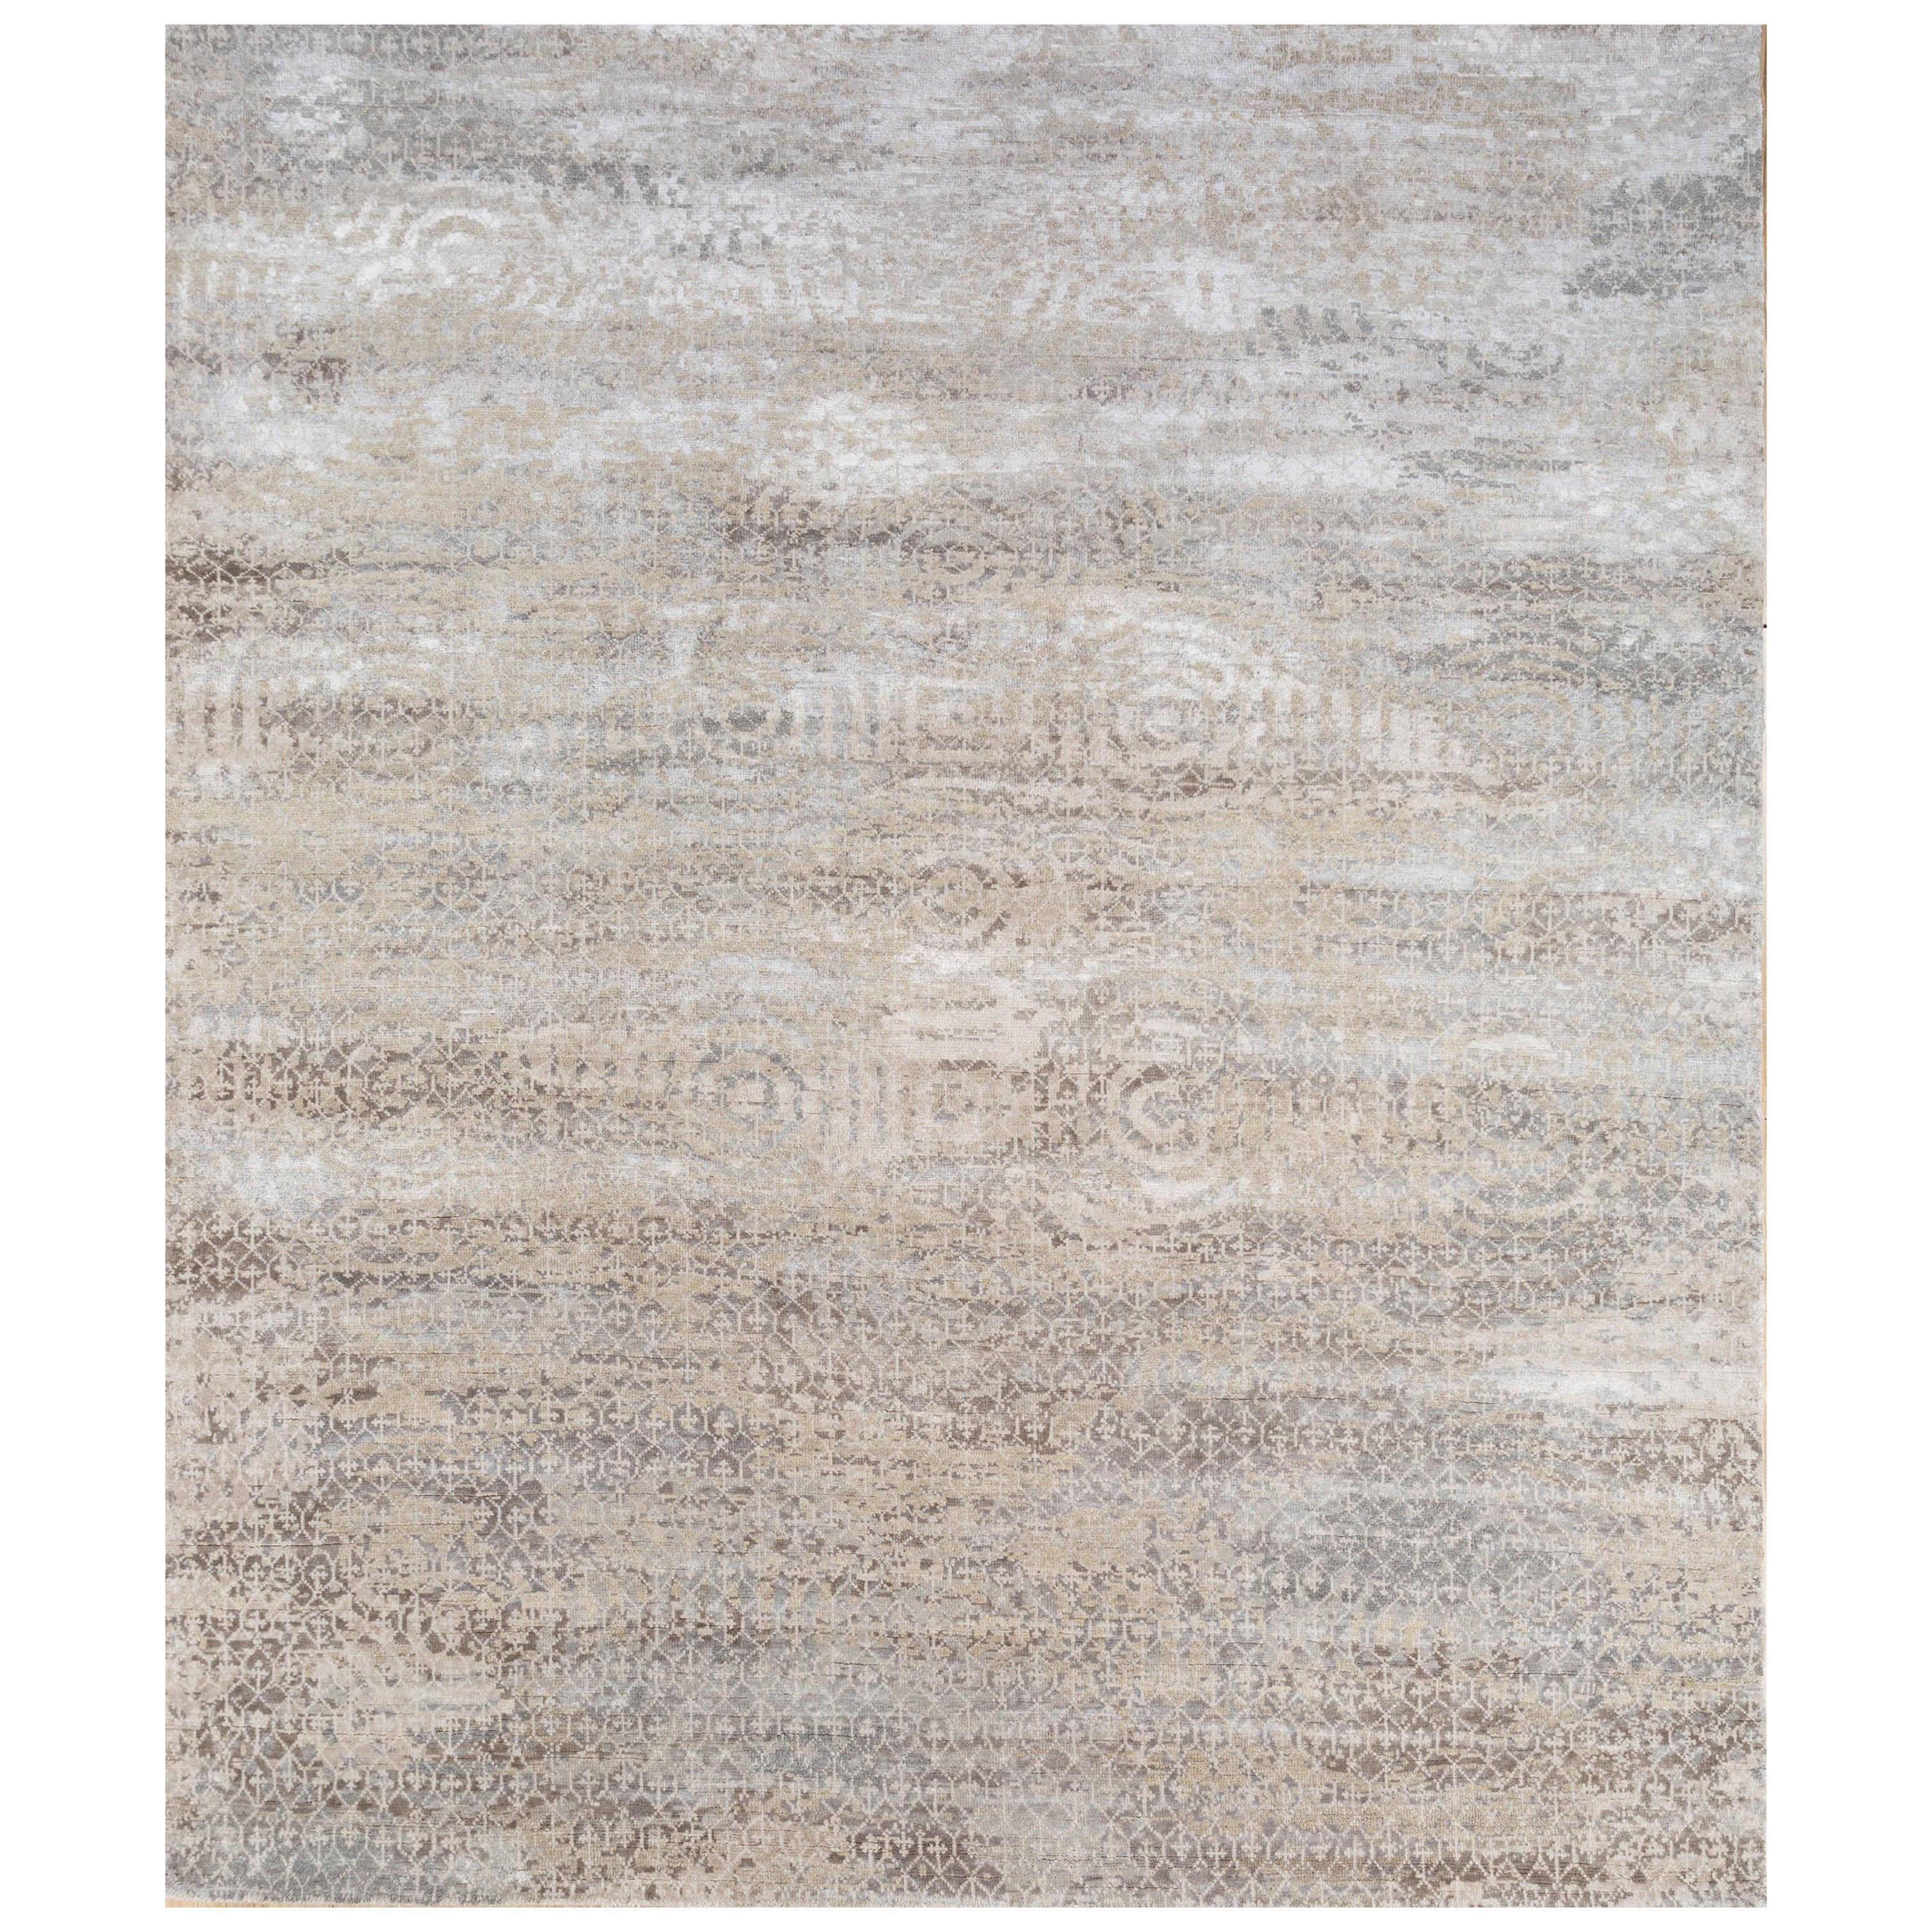 Misty Dawn Antiker weißer & gewölbter 240X300 cm handgeknüpfter Teppich in Misty Dawn